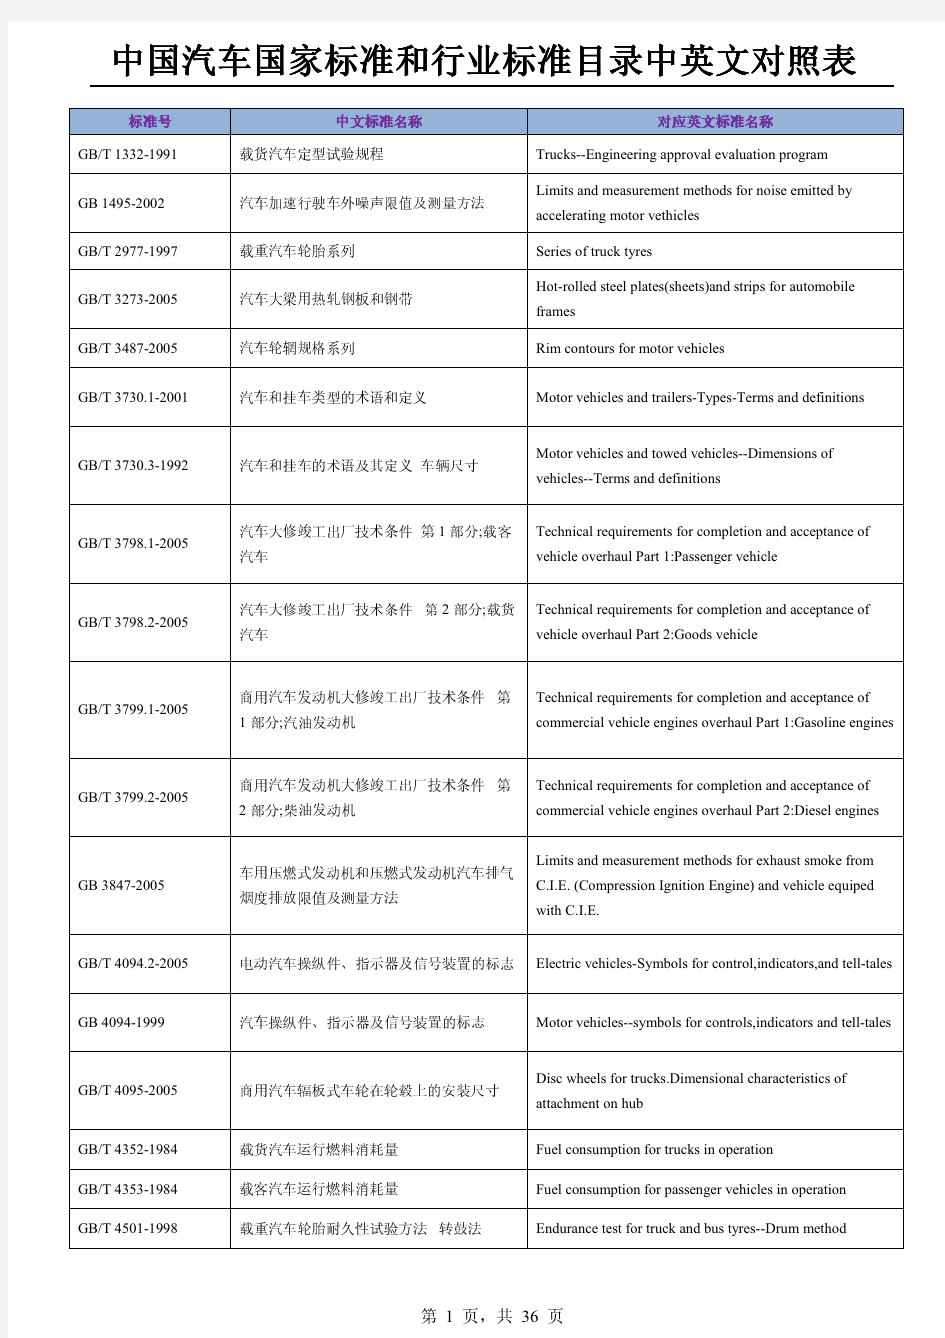 中国汽车国家标准和行业标准目录大全-中英文对照表(2013)